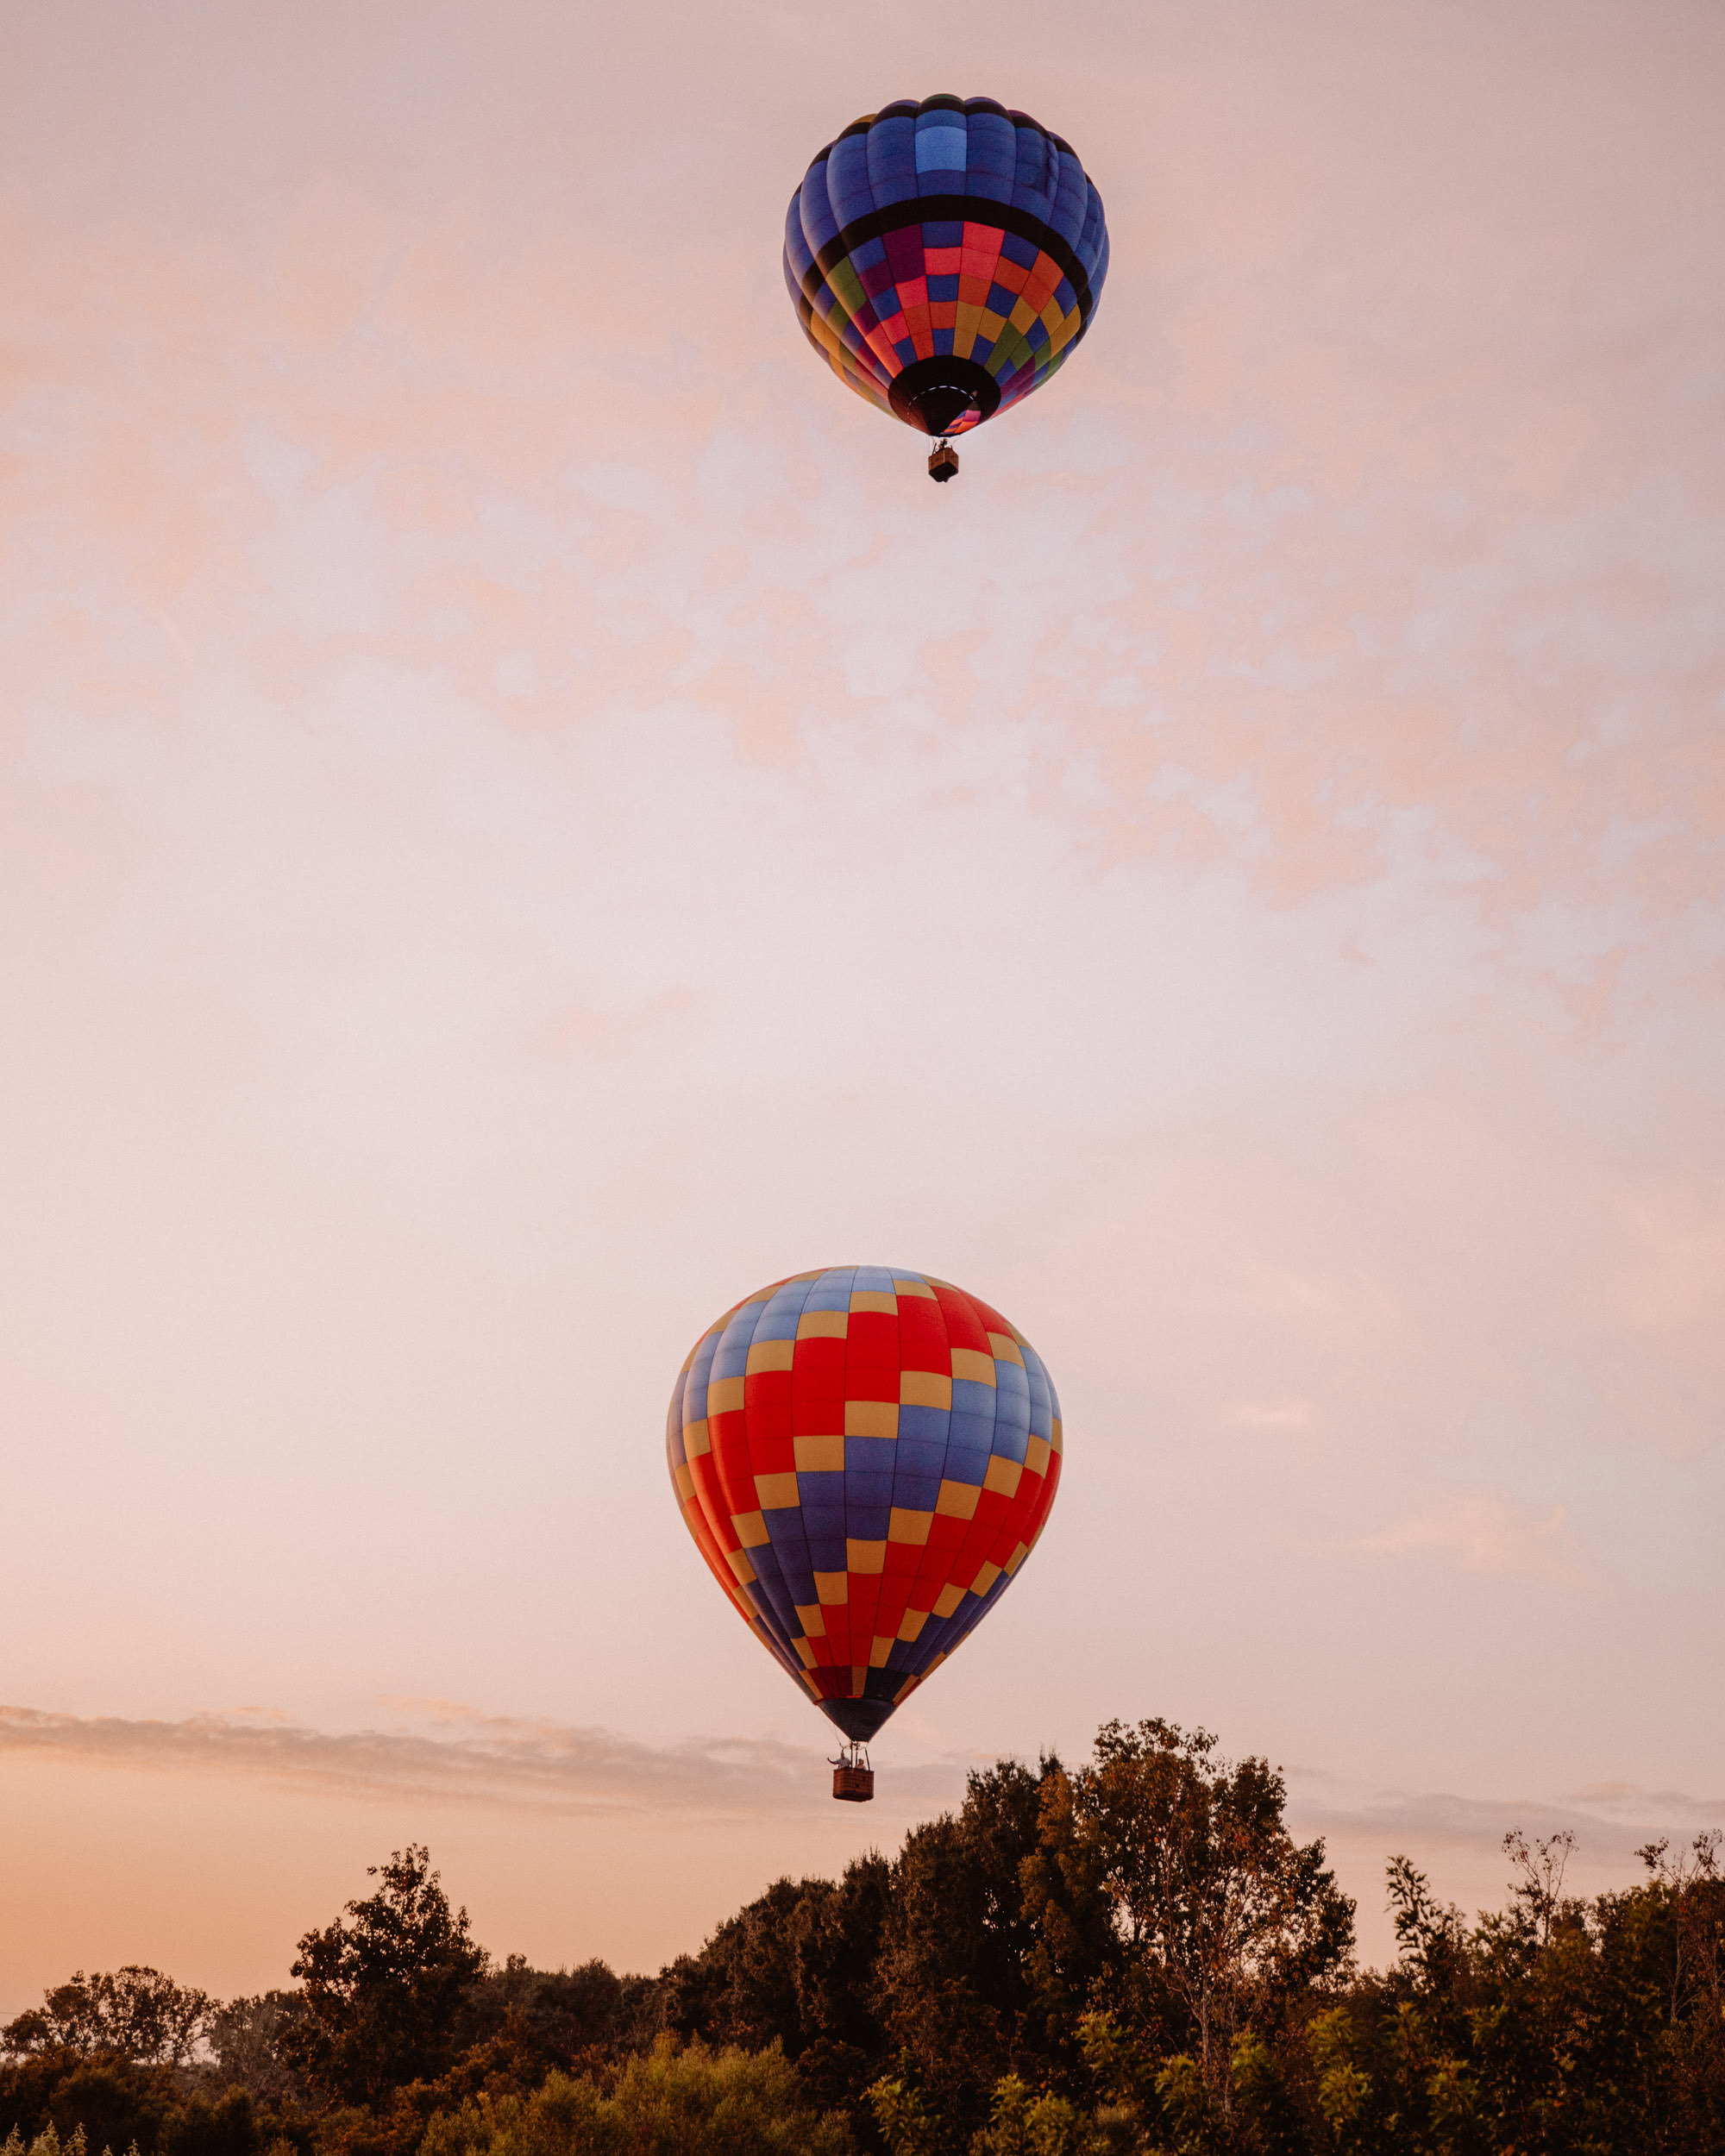 Hot air balloon ride with Orlando Balloon in Kissimmee Florida